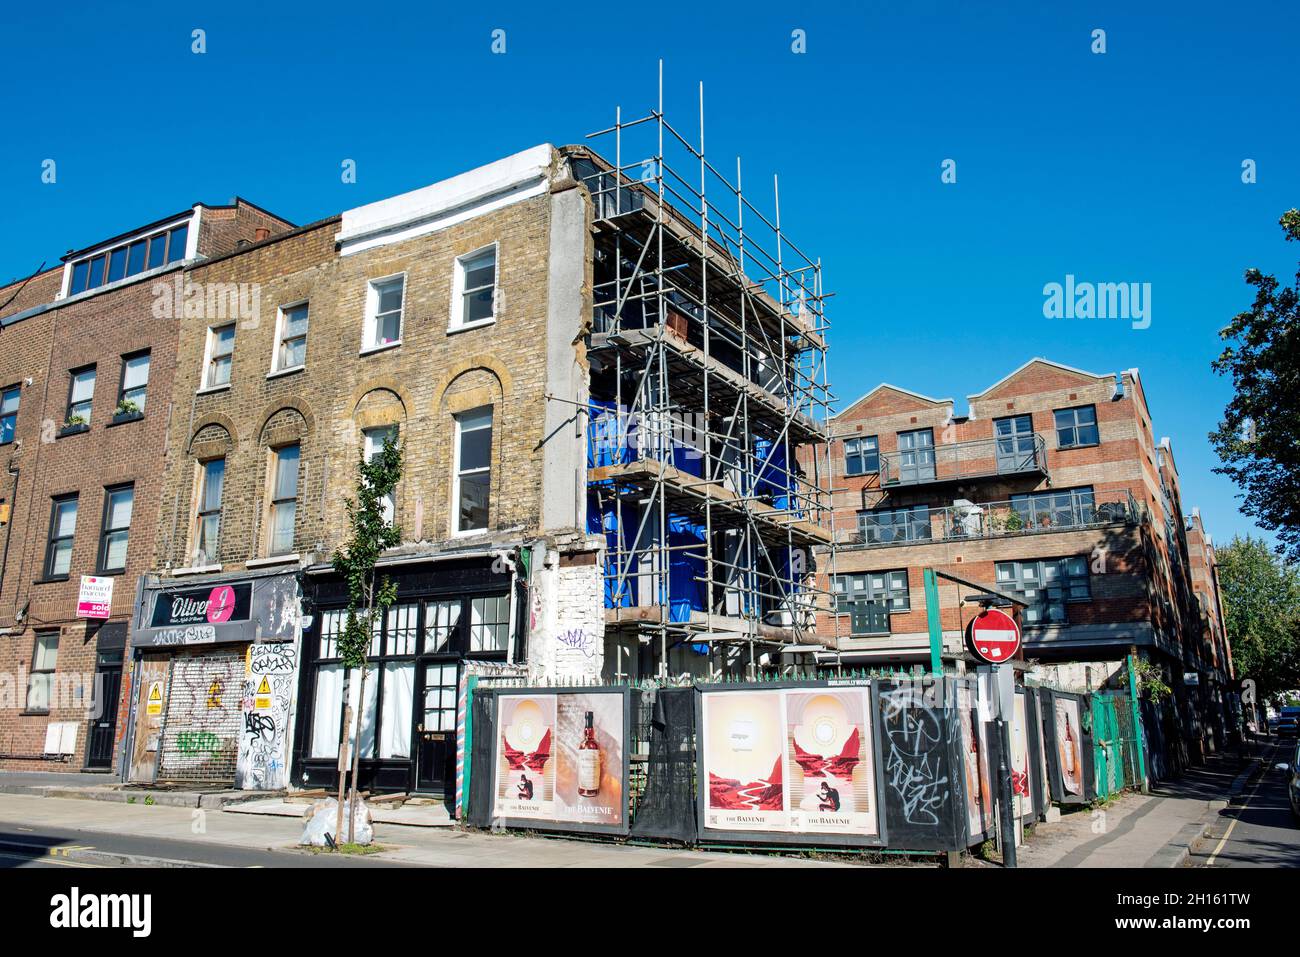 Site d'angle abandonné avec des hongres à l'extrémité de la terrasse, Camden Town Londres Angleterre Grande-Bretagne Royaume-Uni Banque D'Images